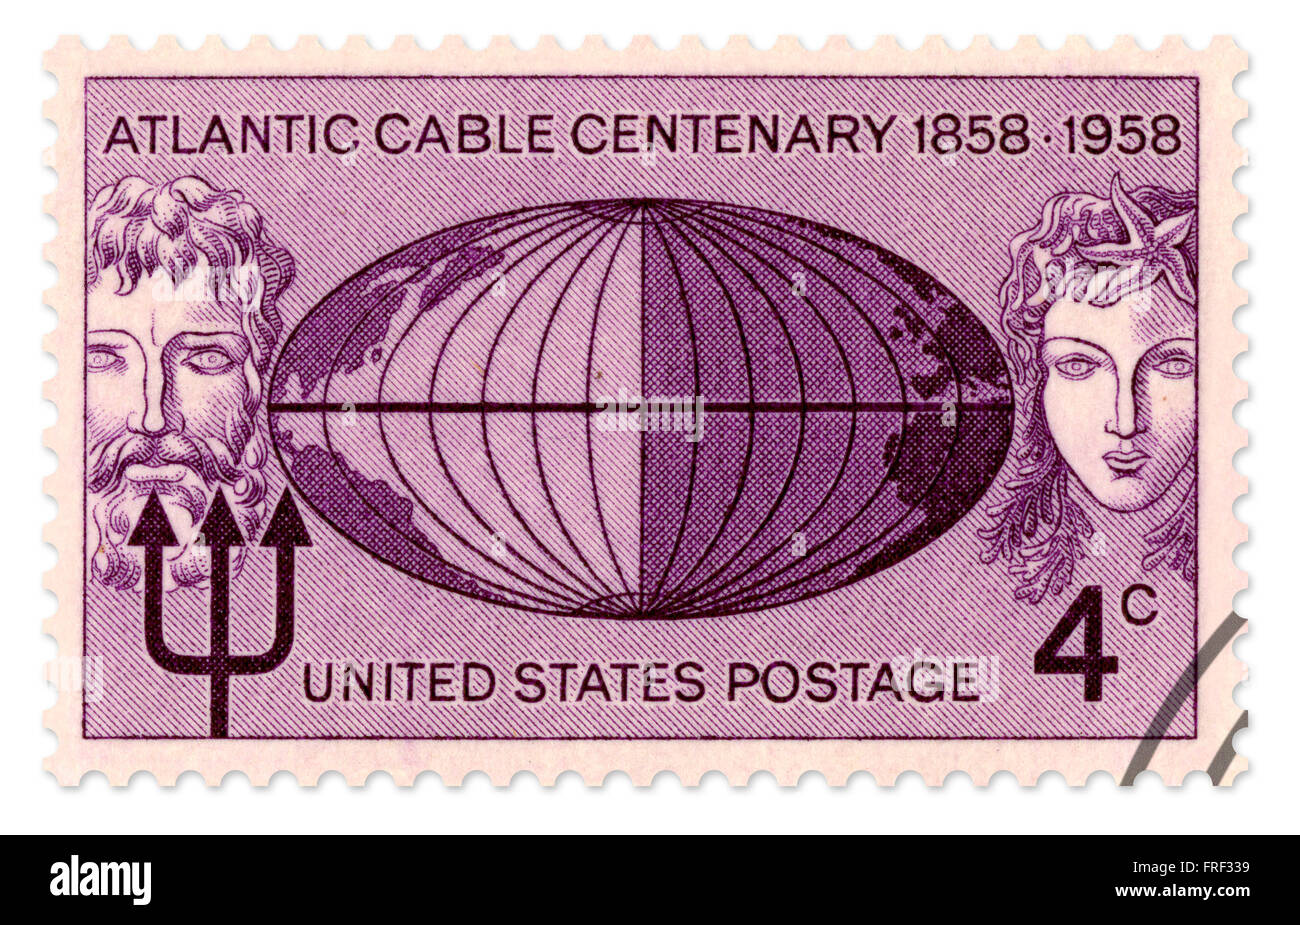 Timbre commémoratif United States pour le câble de l'Atlantique 1858-1958 Centenaire, publié en 1958 par le Service postal des Etats-Unis. Cette numérisation haute résolution comprend un chemin de détourage. Banque D'Images